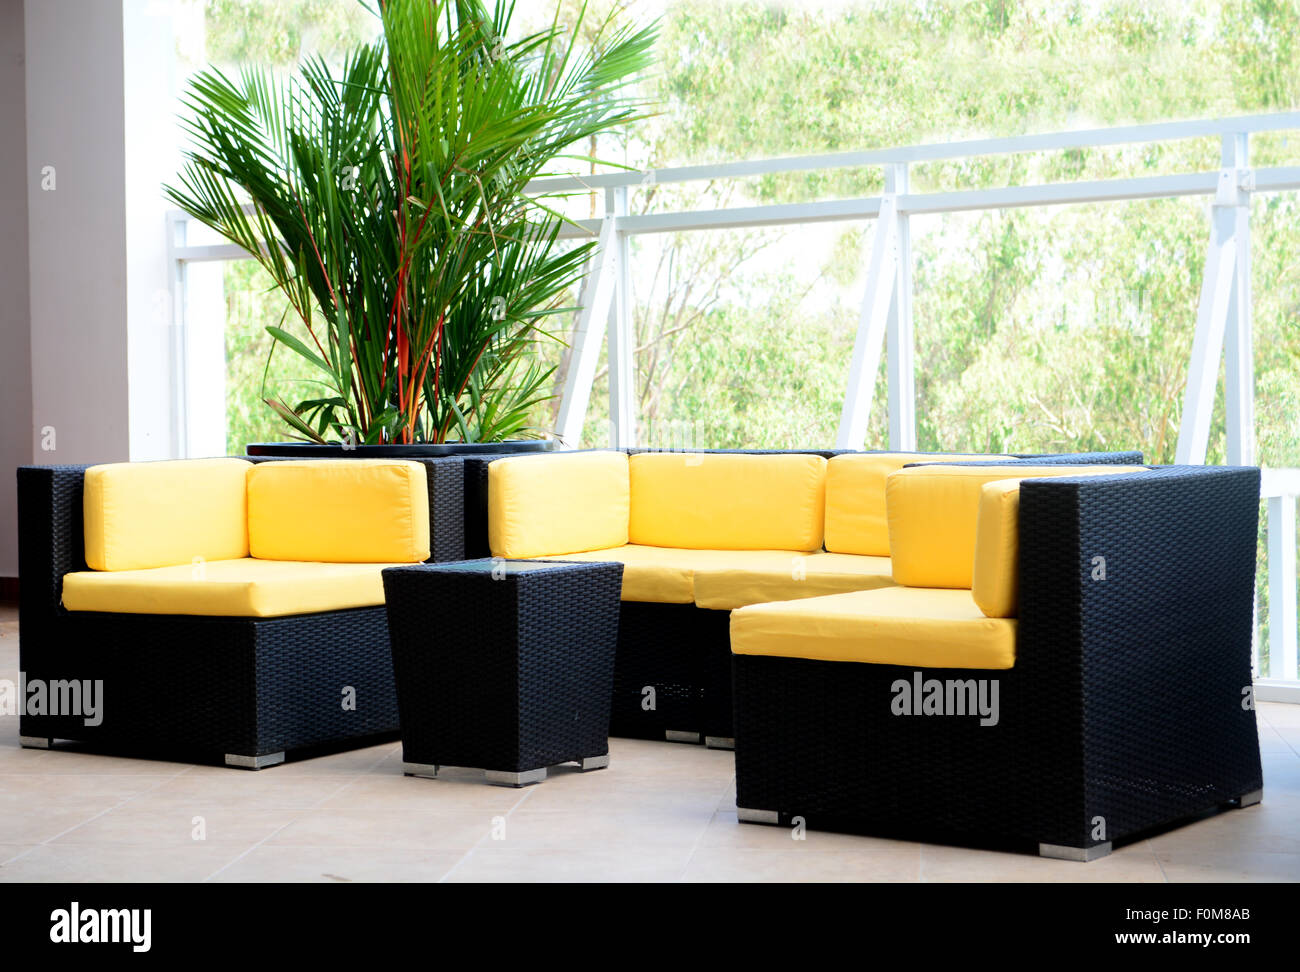 Hotel mobiliario interior cubierta con sofás y sillas de color negro y amarillo almohadas Foto de stock